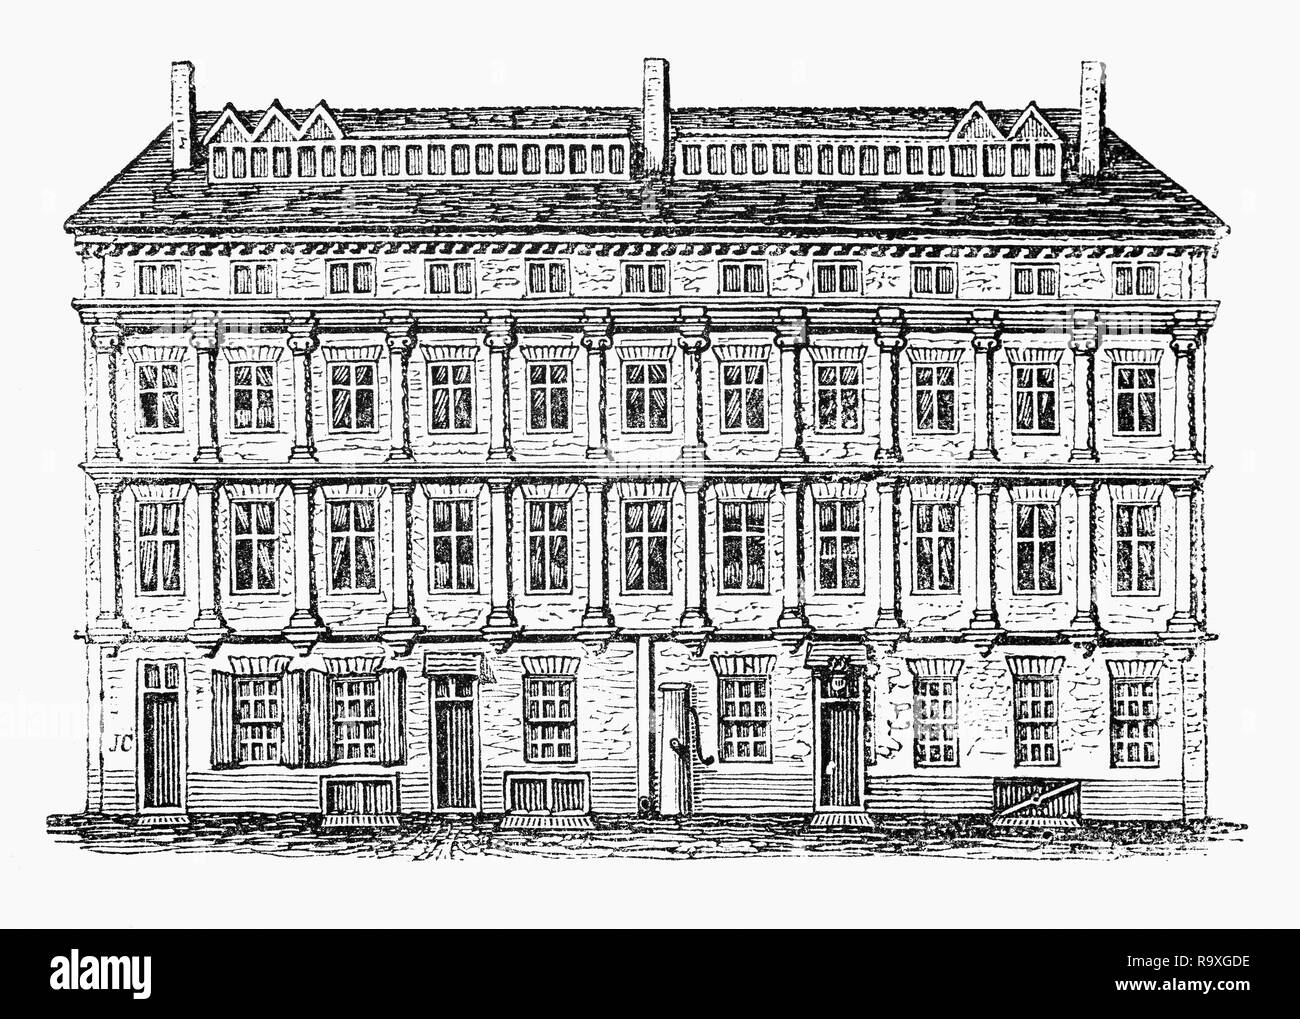 Craven Haus wurde an der Ecke der Drury Lane und East Grinstead Straße. Ursprünglich genannt Drury House, im späten 17. Jahrhundert durch die reichen Grafen von Craven, die umgebaut und umbenannt es erworben wurde. Seine Herrin der Königin von Böhmen (Tochter von James I und direkter Vorfahre der hannoverschen Dynastie) auch in der Residenz war hier. Vom 18. Jahrhundert Drury Lane war nicht mehr eine modische Lage und wurde von der Trunkenheit, Ausschweifung bekannt. Stockfoto